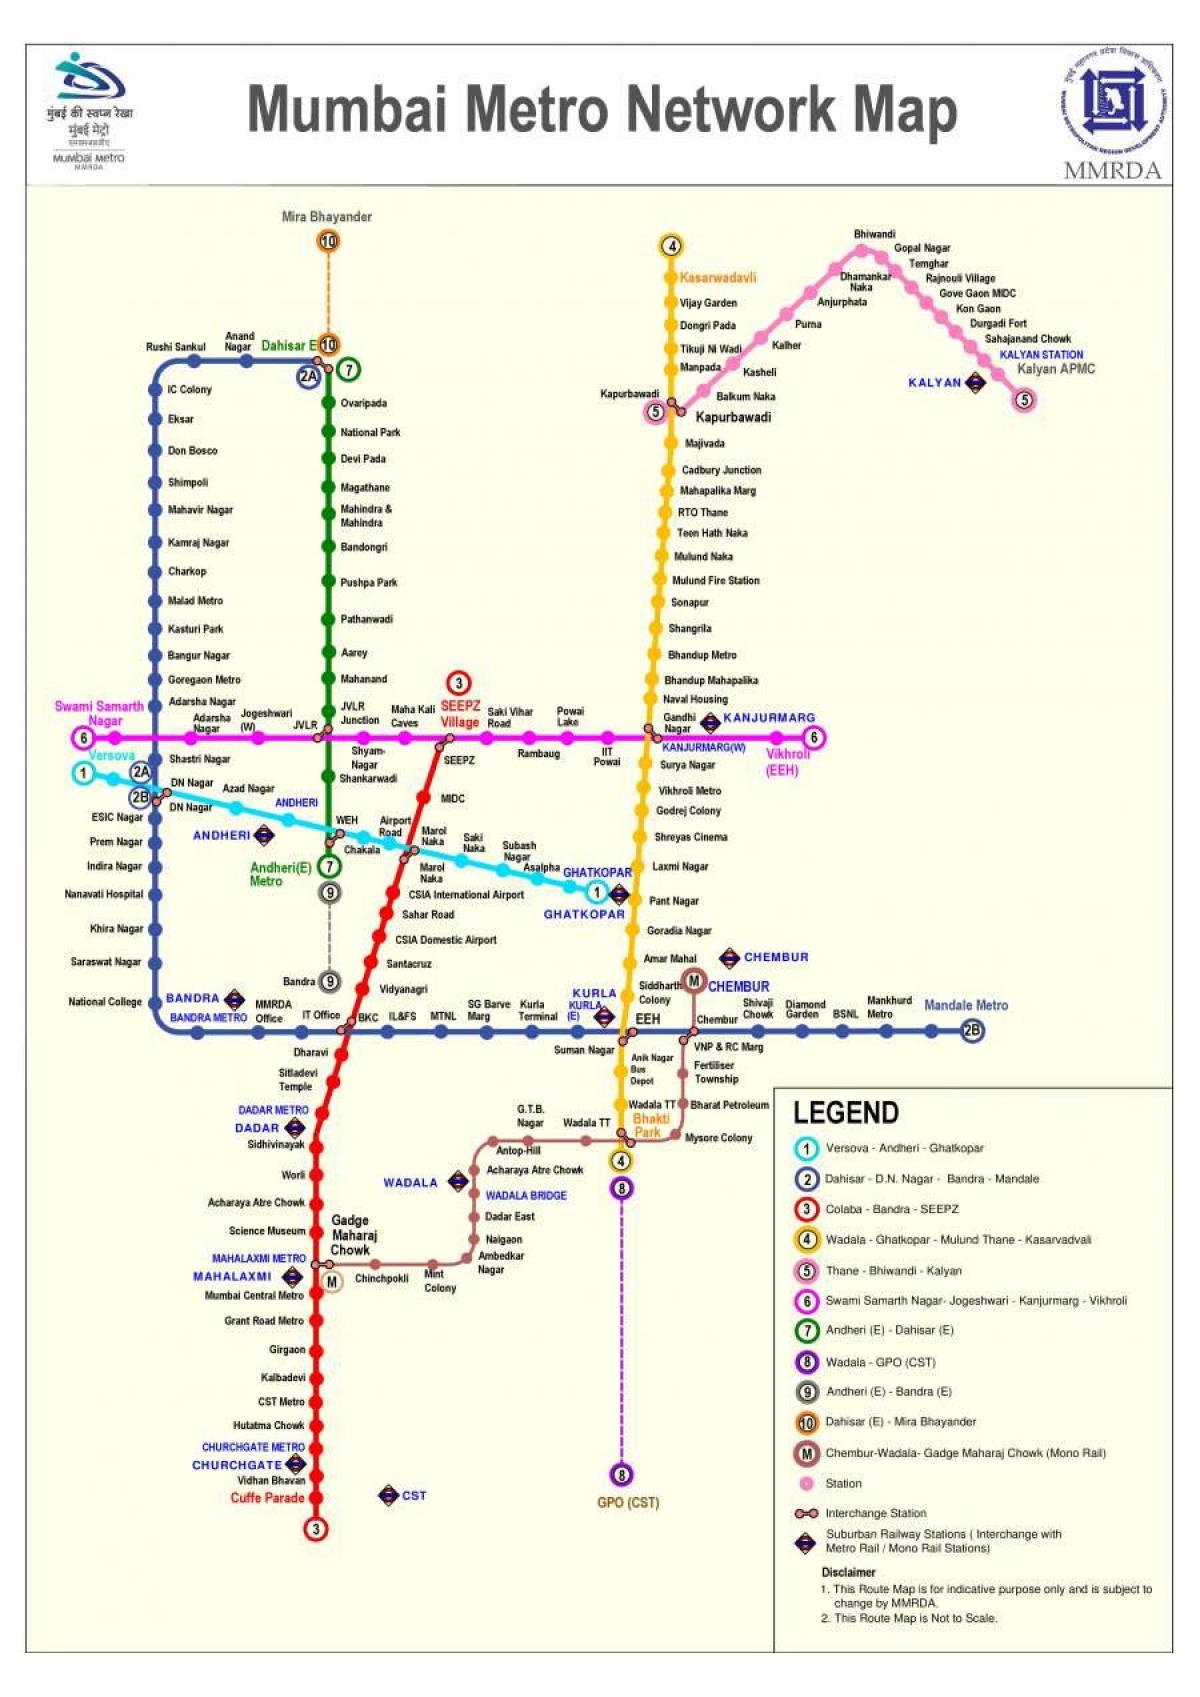 Mappa delle stazioni della metropolitana di Mumbai - Bombay